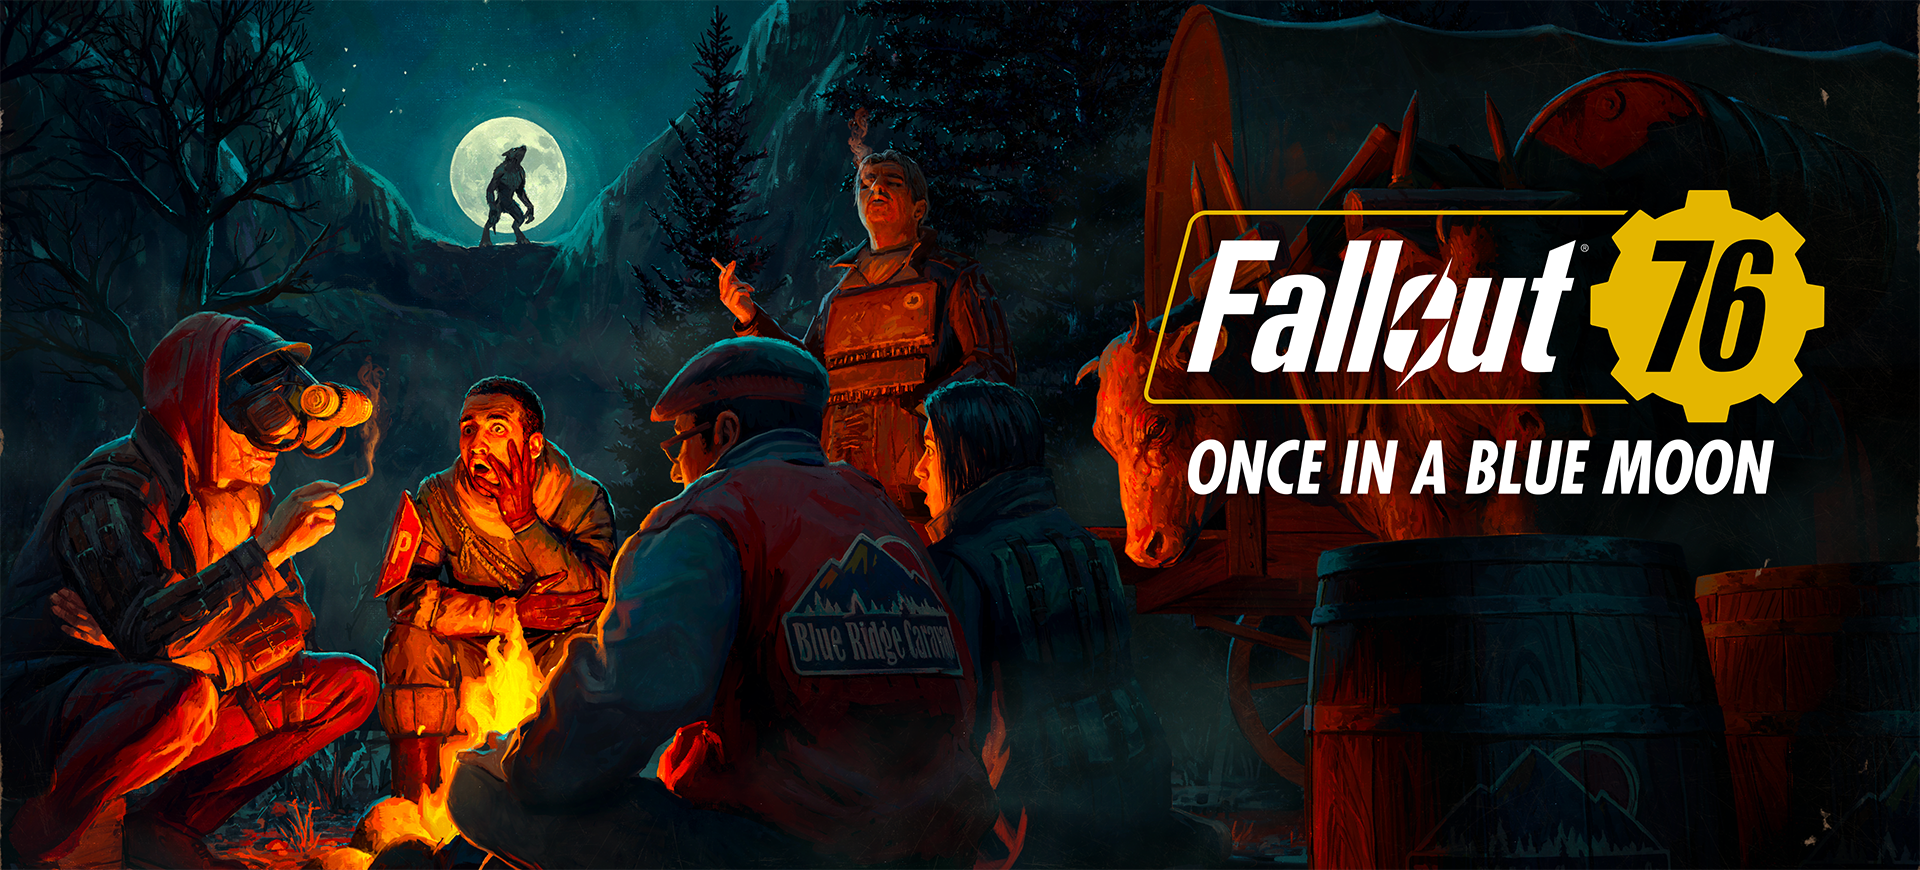 L’aggiornamento “A punti di luna” di Fallout 76 è disponibile